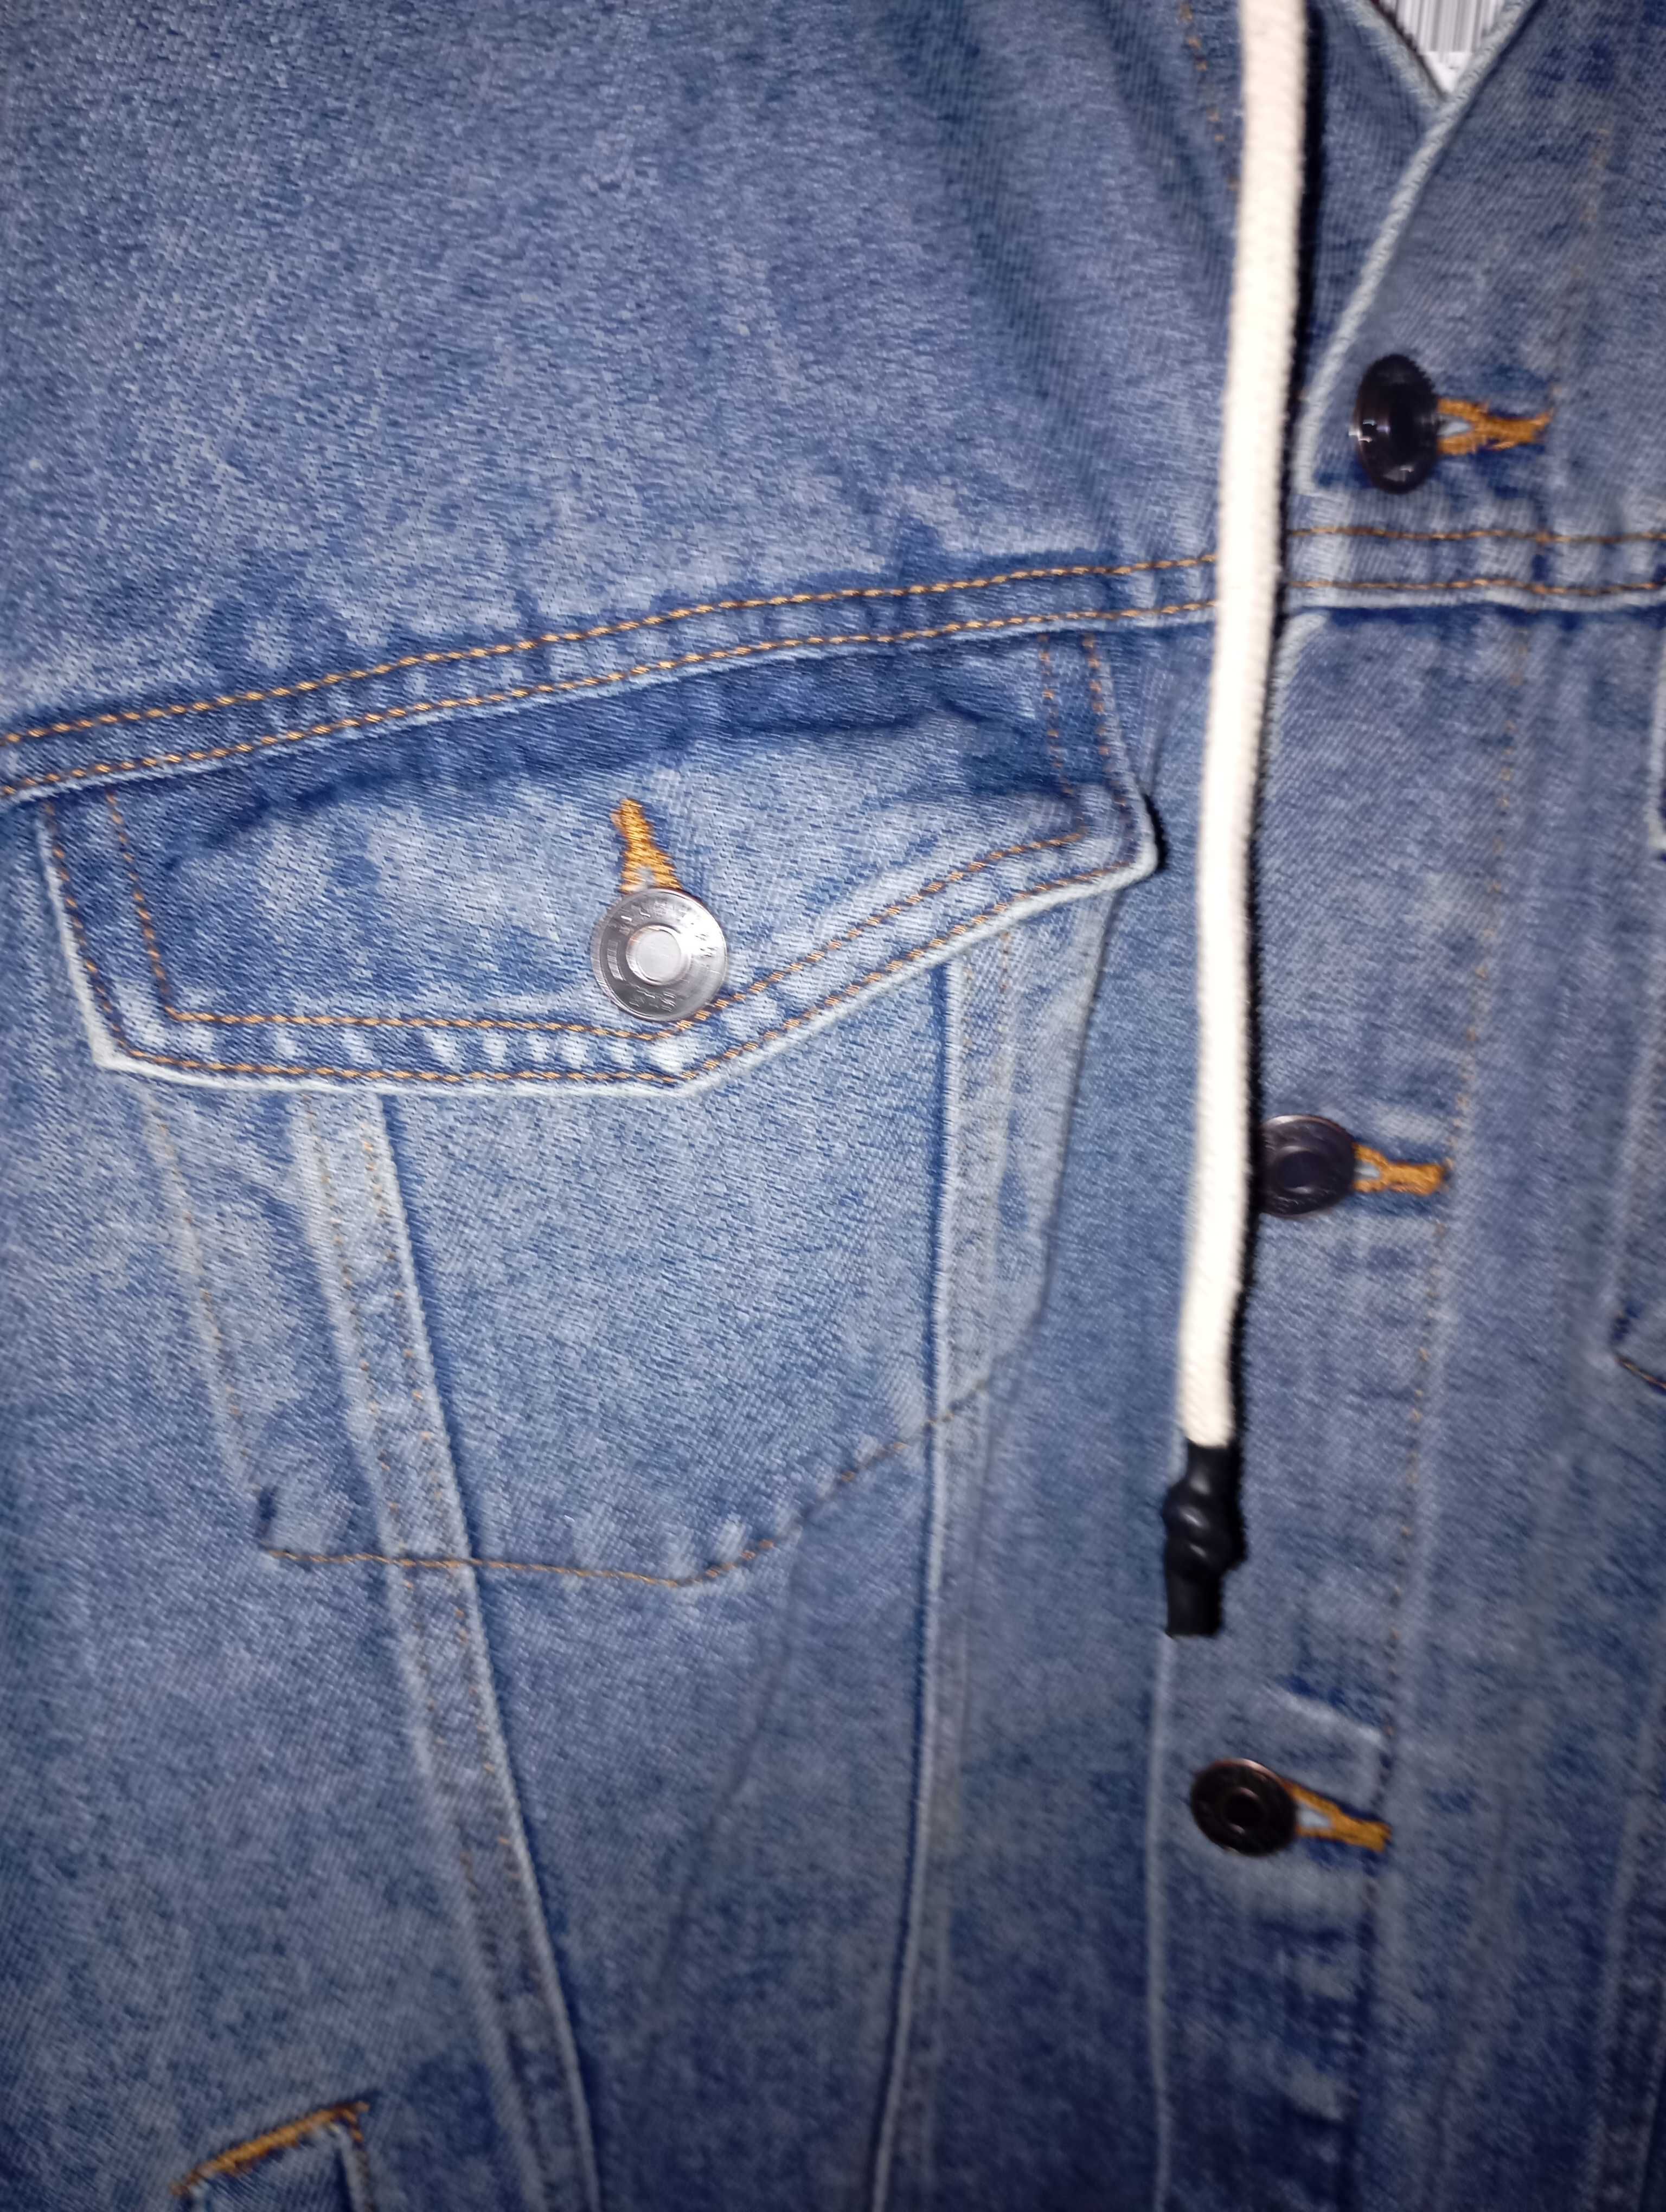 В наличии
Джинсовка джинсовая куртка пиджак р 54
SinSay